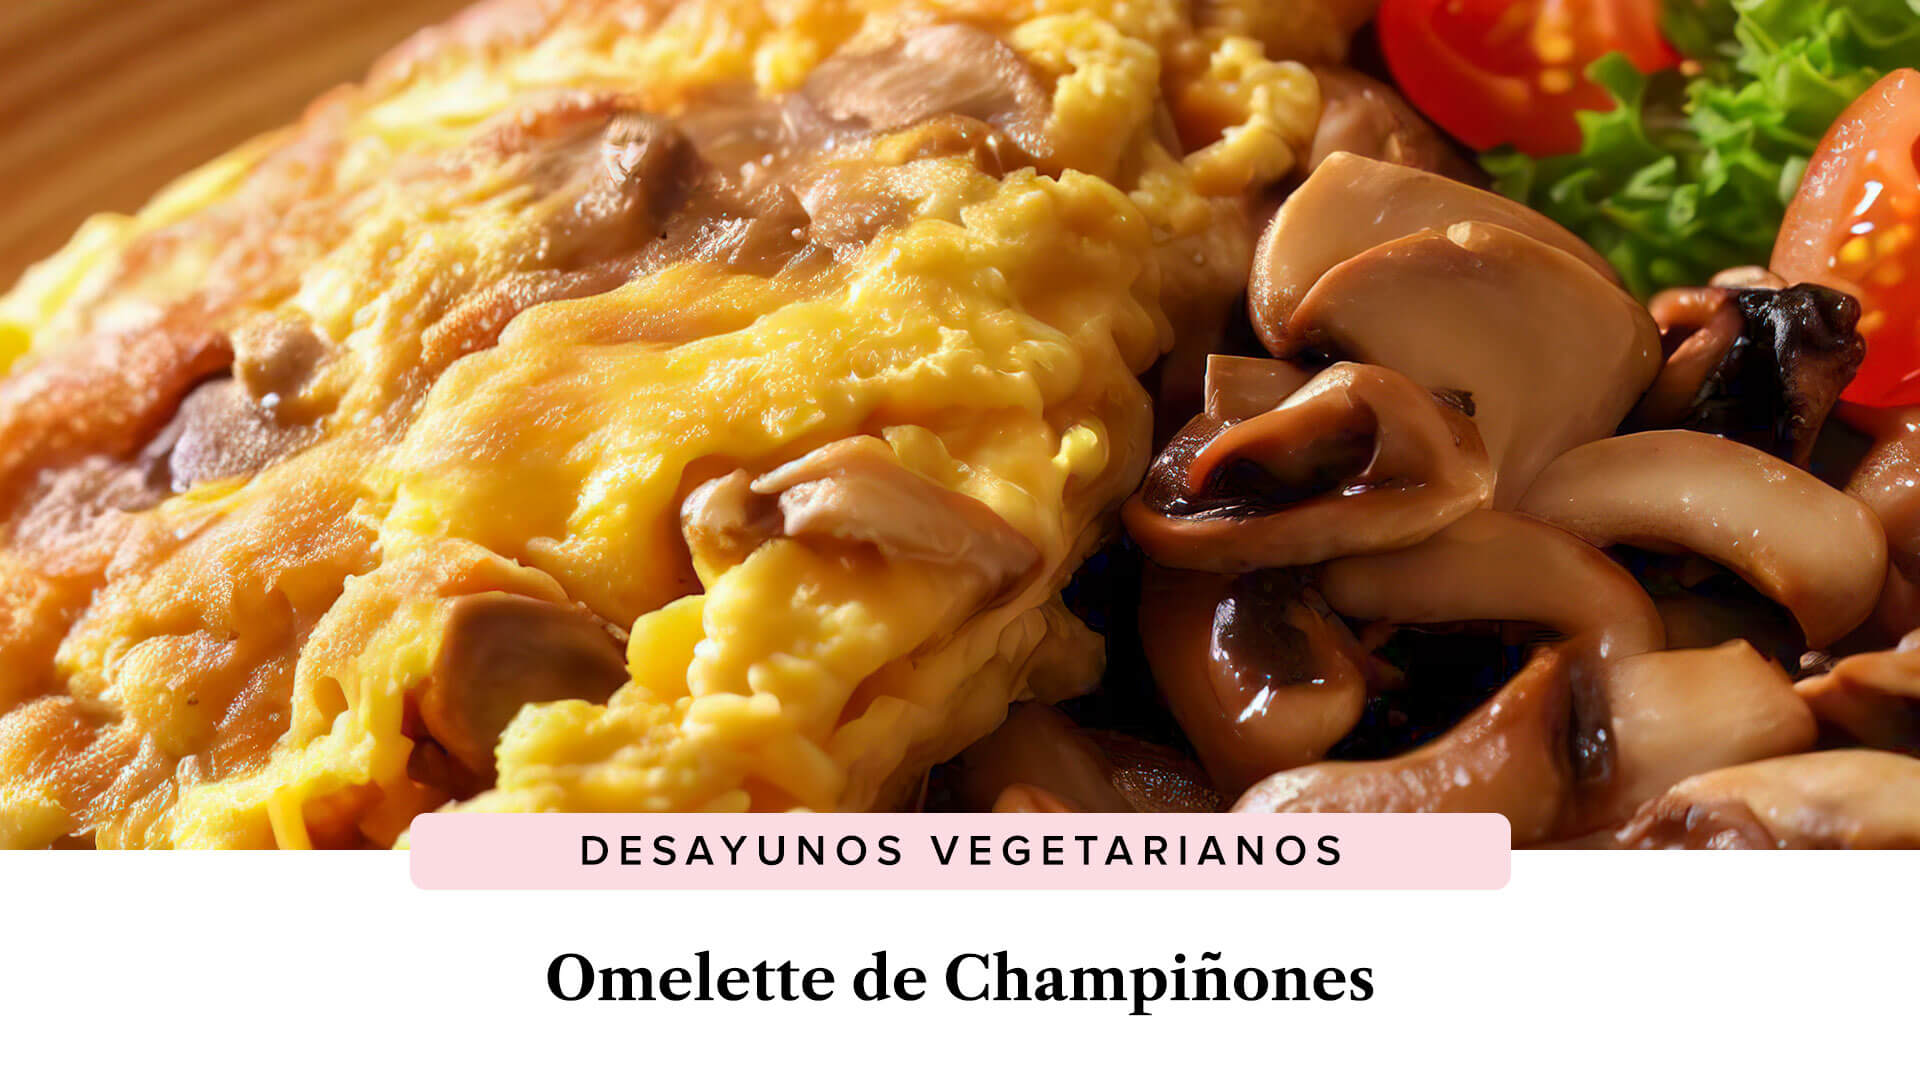 Omelette de Champiñones